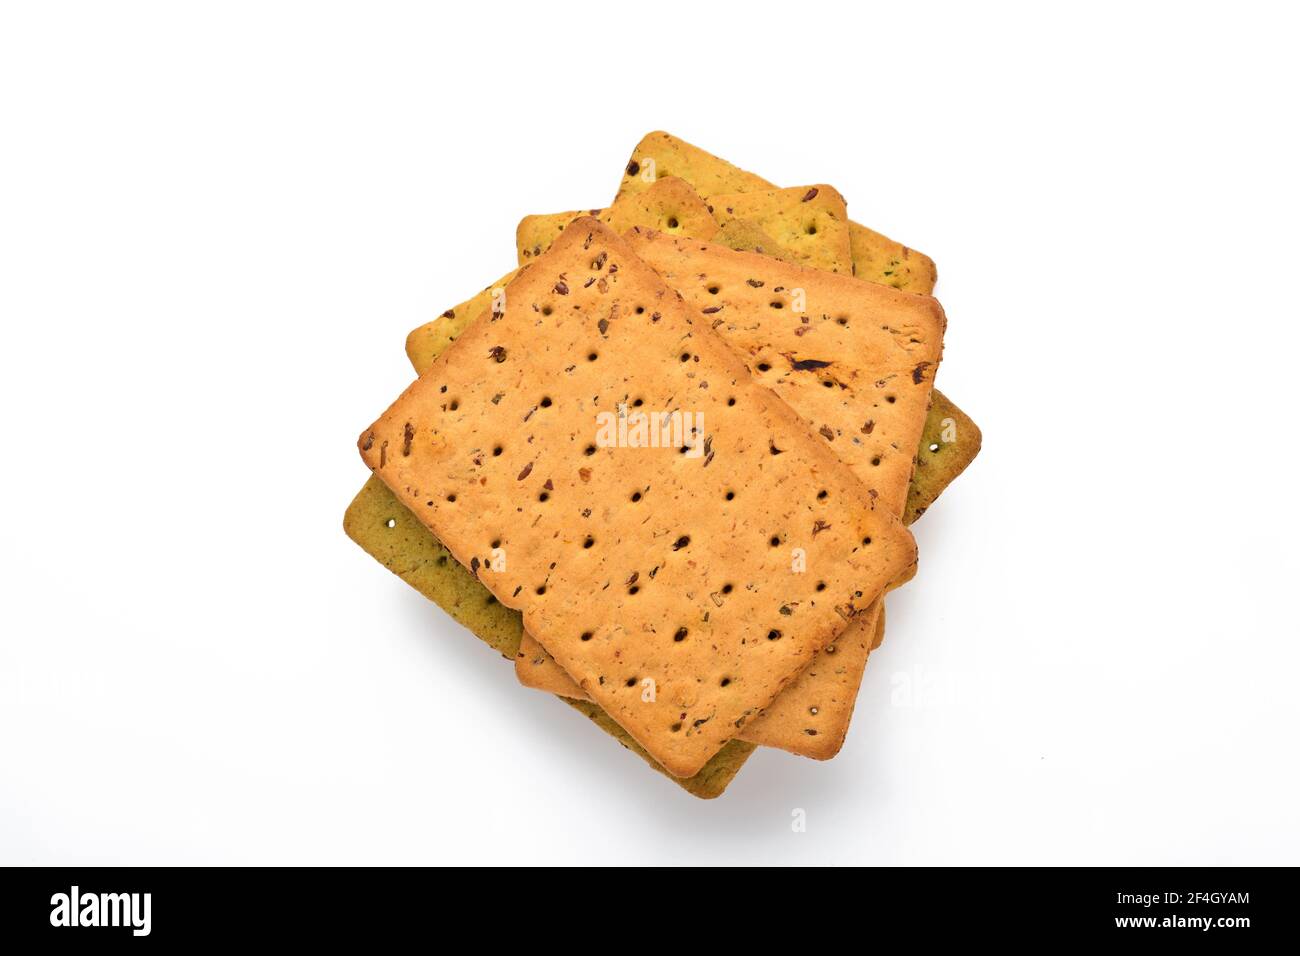 Cracker con semi di lino e crusca di avena forma rettangolare per una dieta sana, dietetica ed equilibrata isolata su sfondo bianco. Snack per una corretta alimentazione Foto Stock